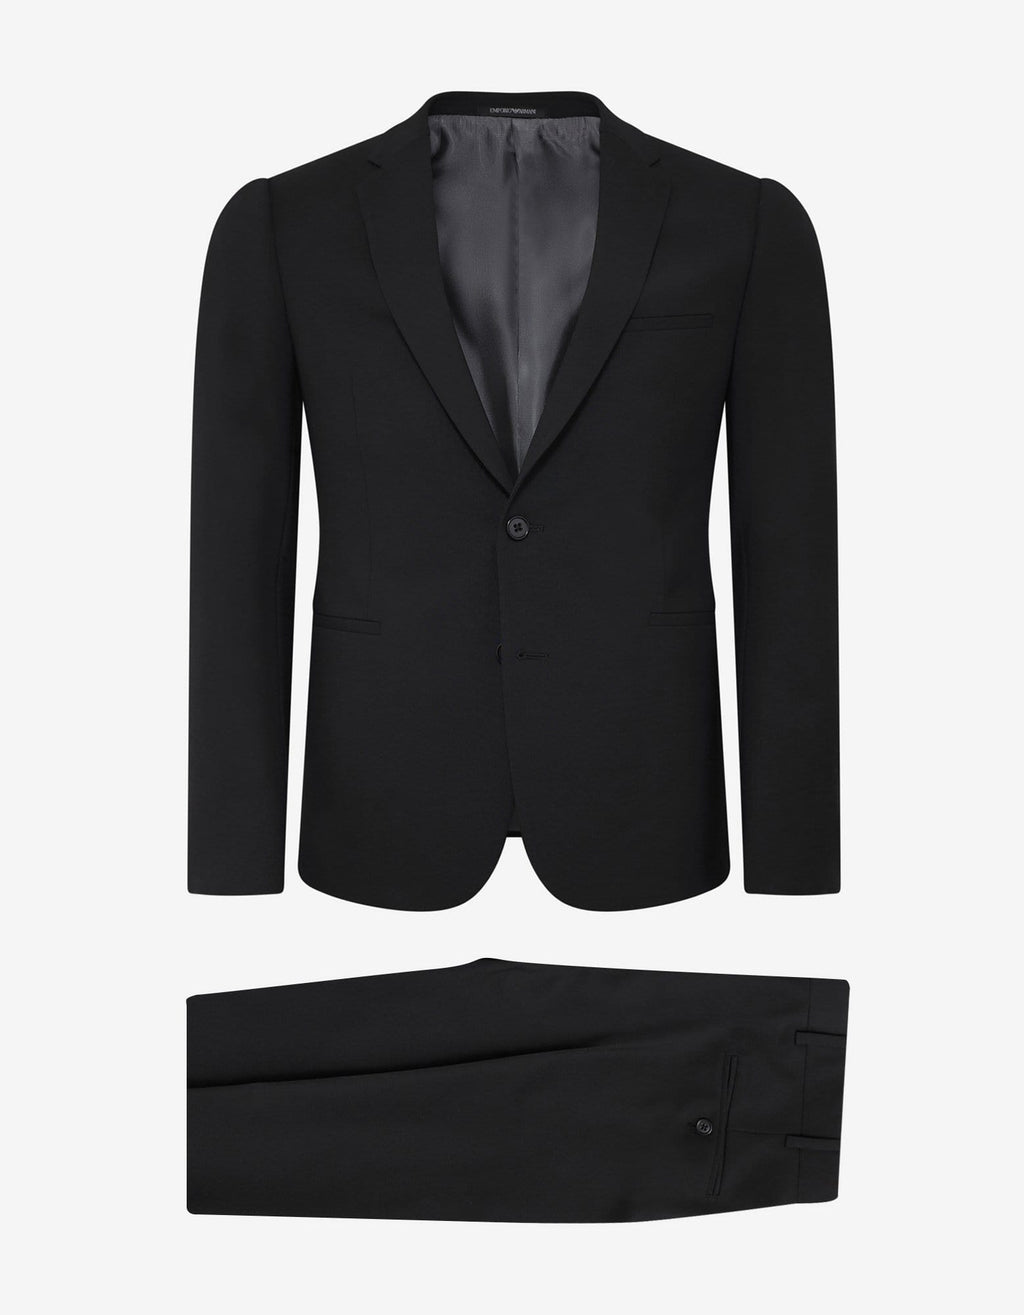 Emporio Armani Emporio Armani Black Two-Piece Formal Suit